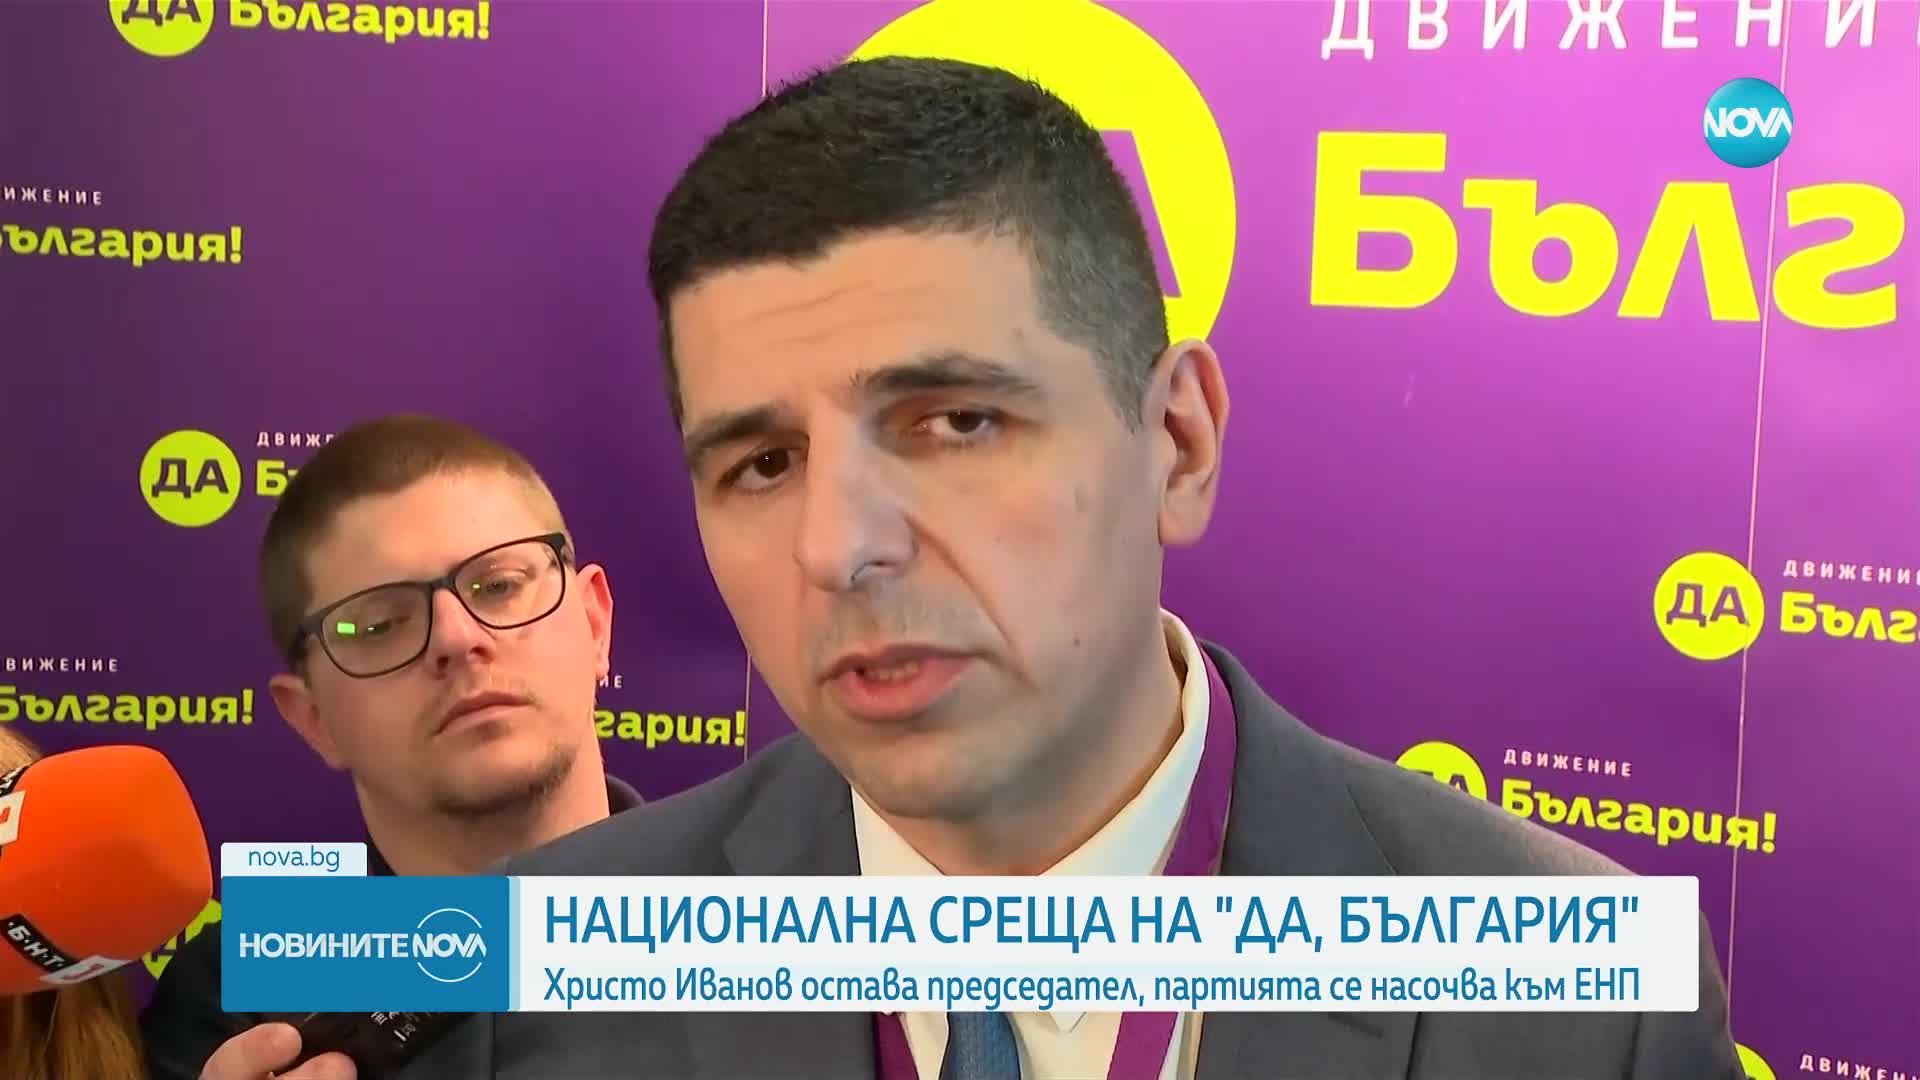 Христо Иванов остава председател на „Да, България”, партията се насочва към ЕНП (ОБЗОР)